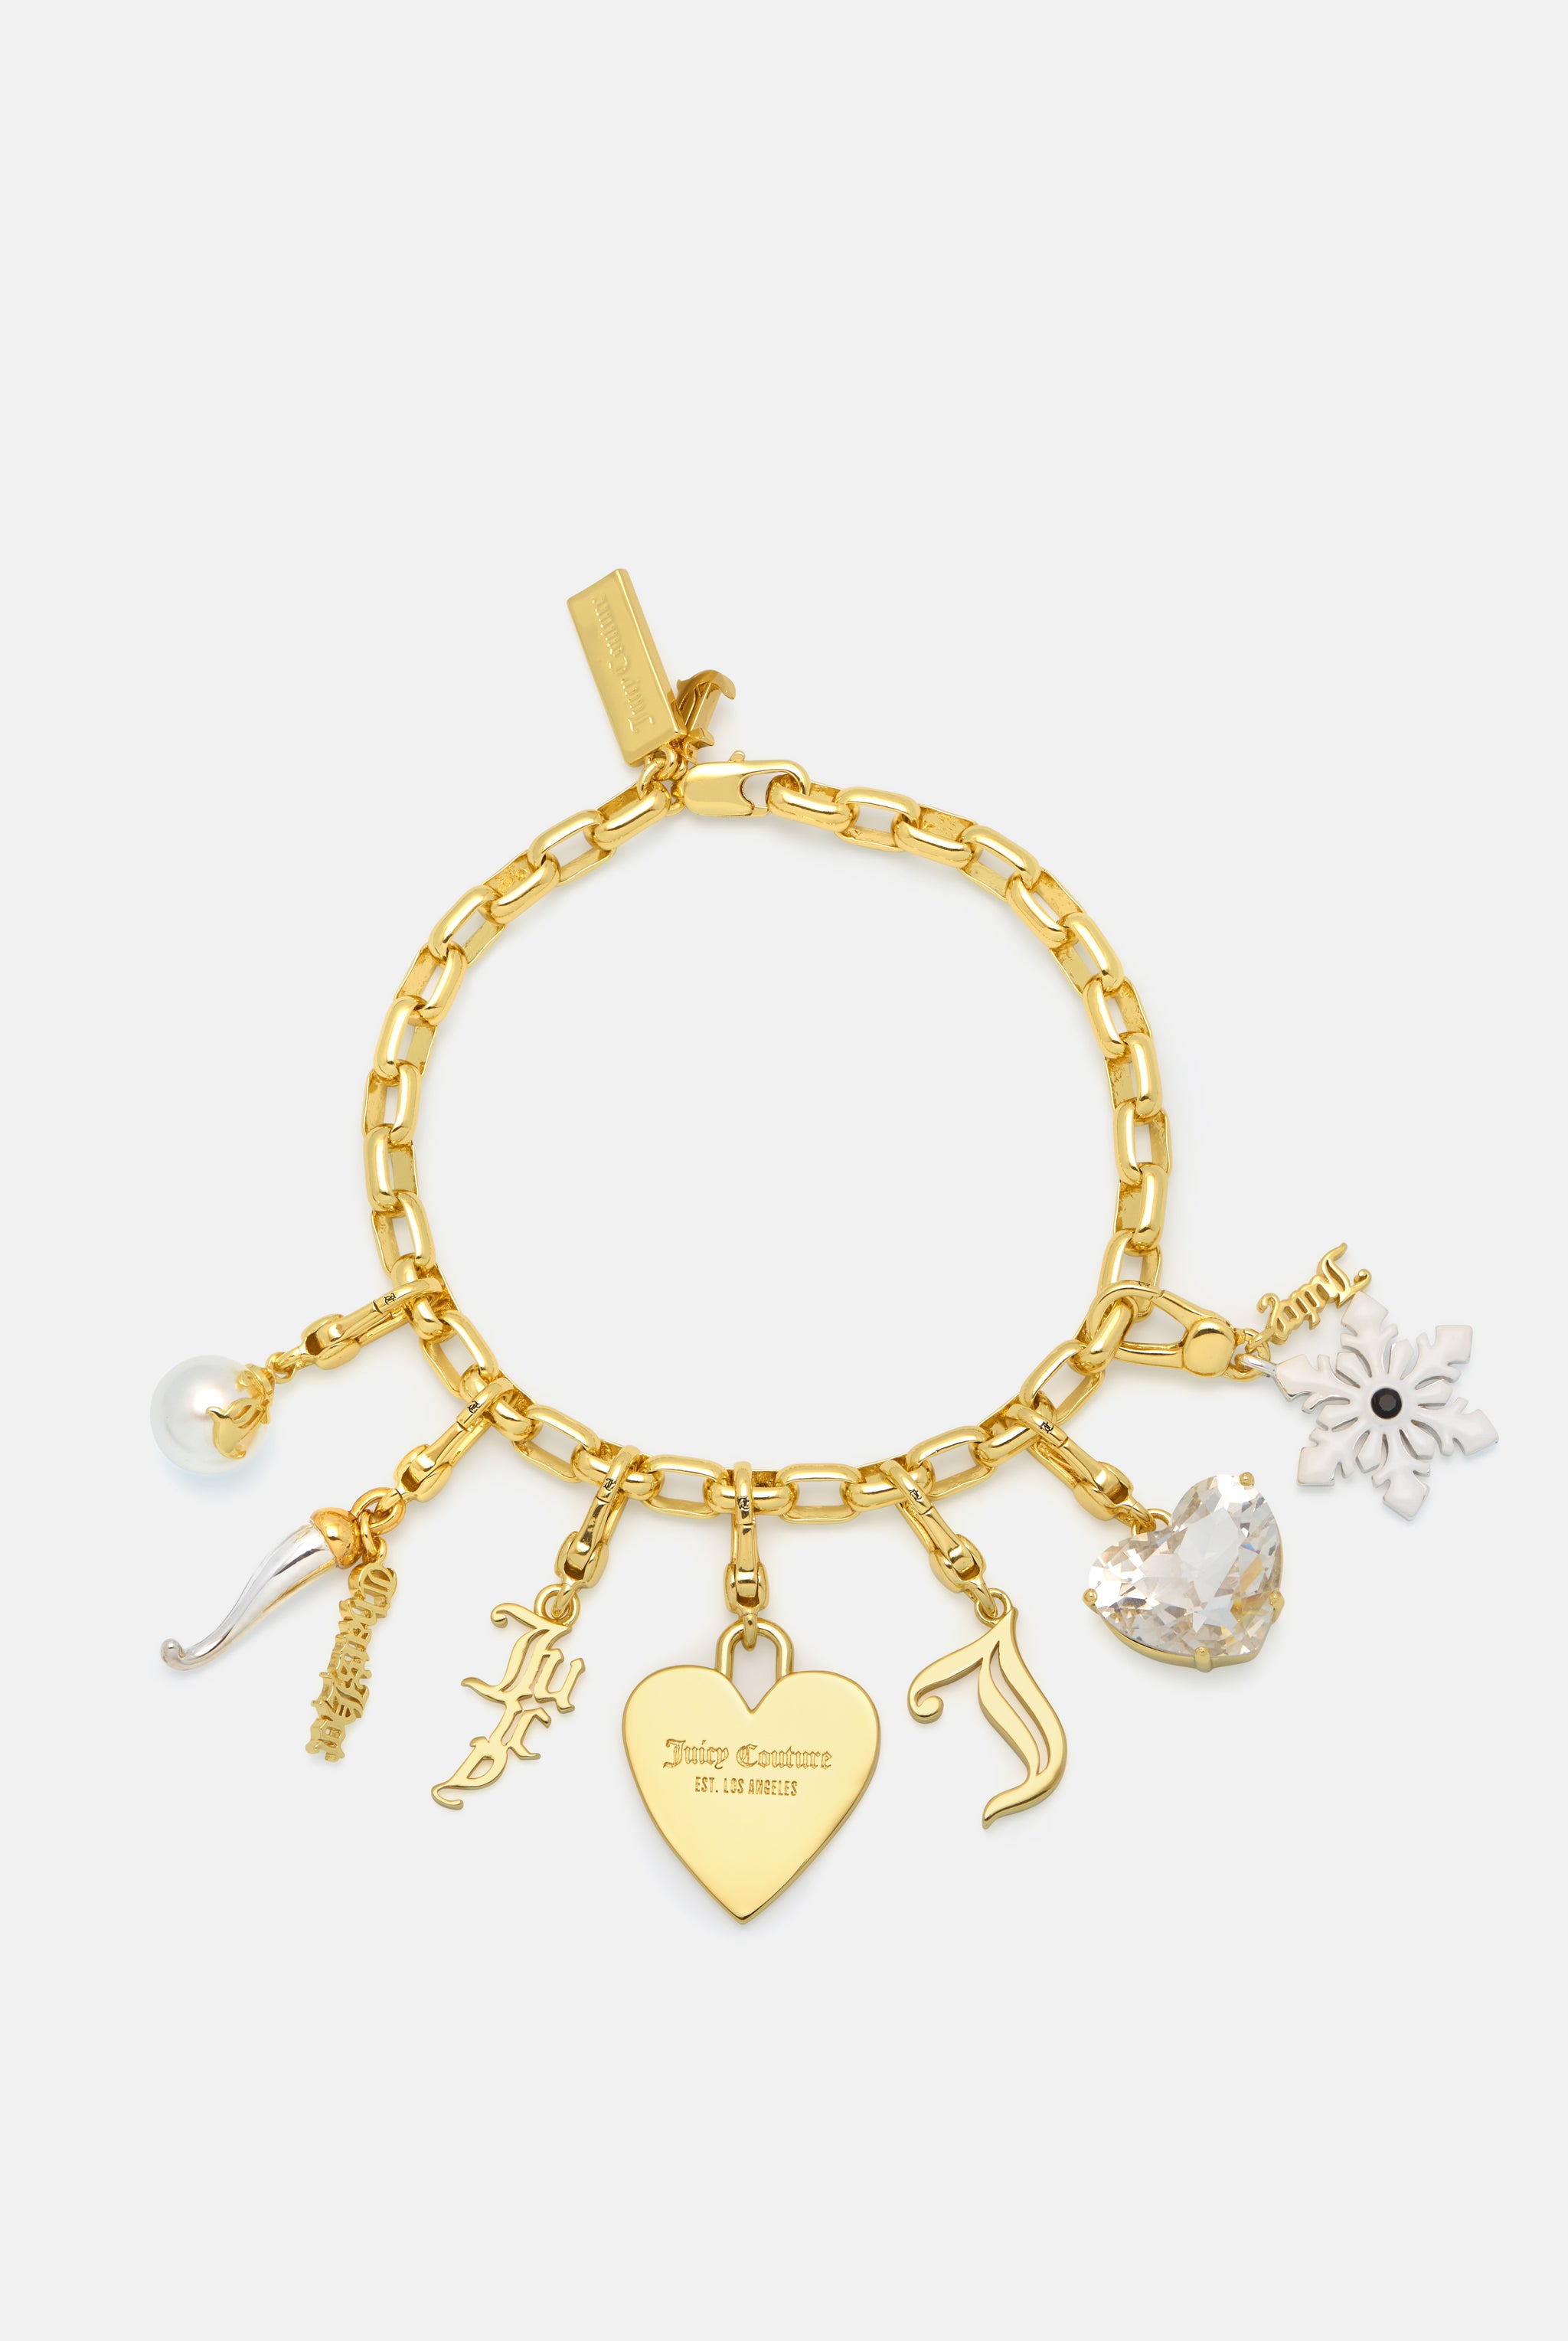 Juicy Couture 2-tone charm bracelet. | Charm bracelet, Bracelets, Juicy  couture